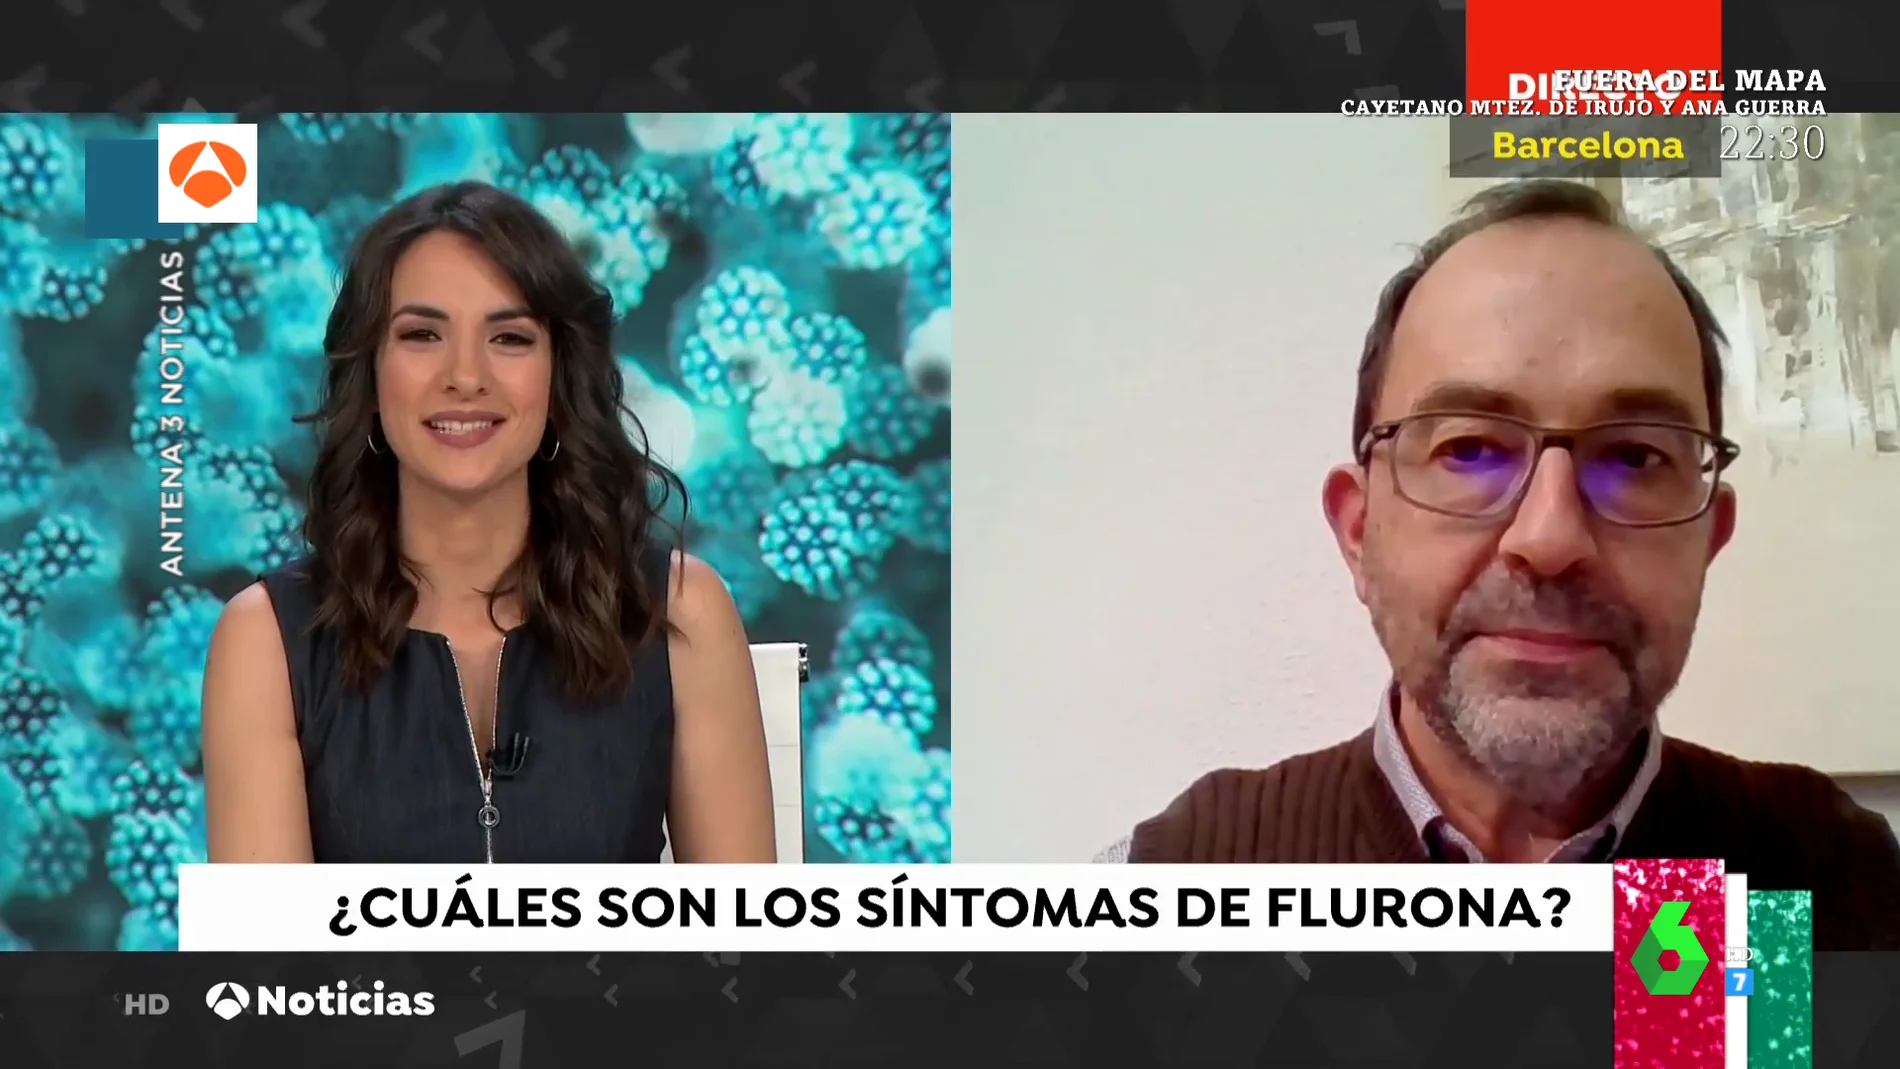 El lapsus de los informativos de Antena 3 al entrevistar en directo por error a otra persona